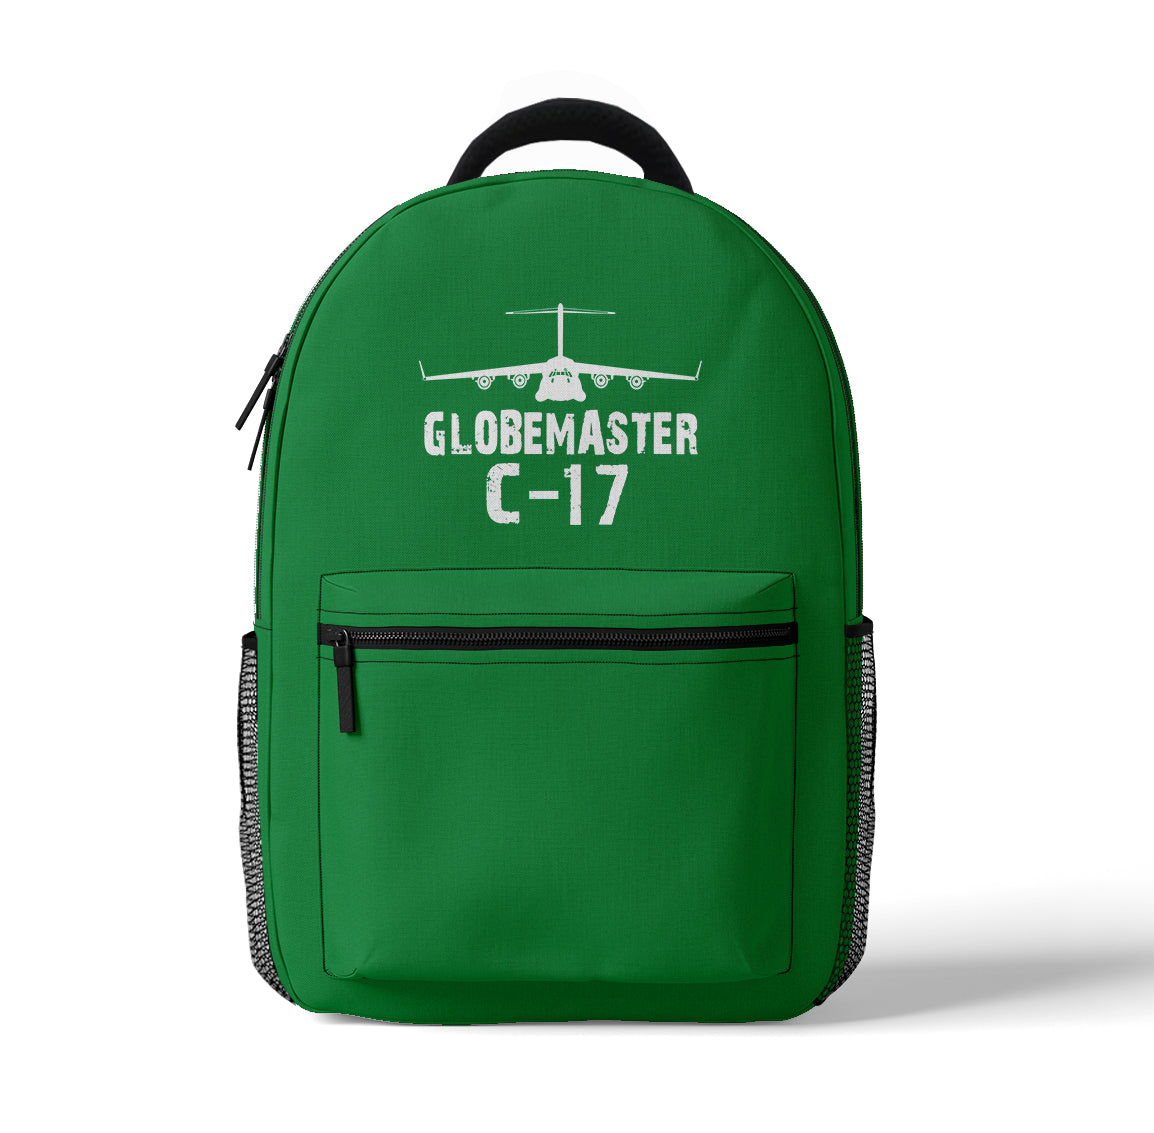 GlobeMaster C-17 & Plane Designed 3D Backpacks